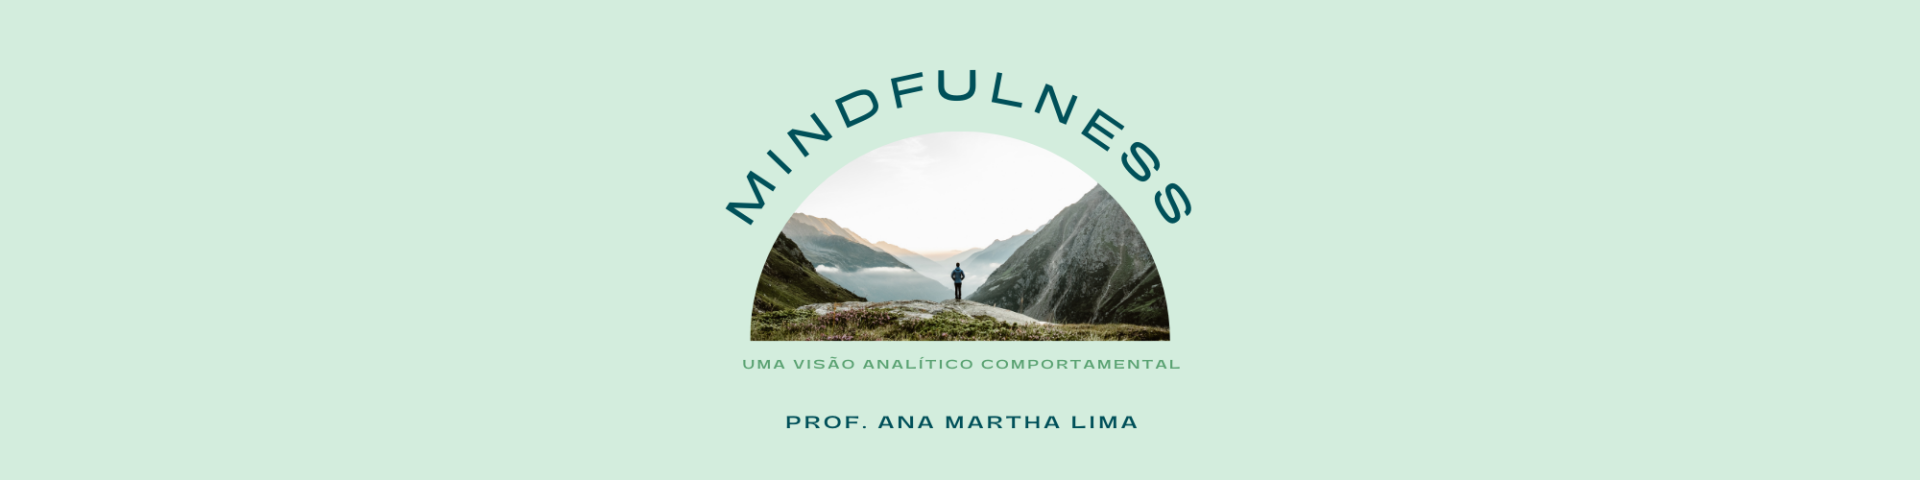 Mindfulness: uma visão analítico comportamental